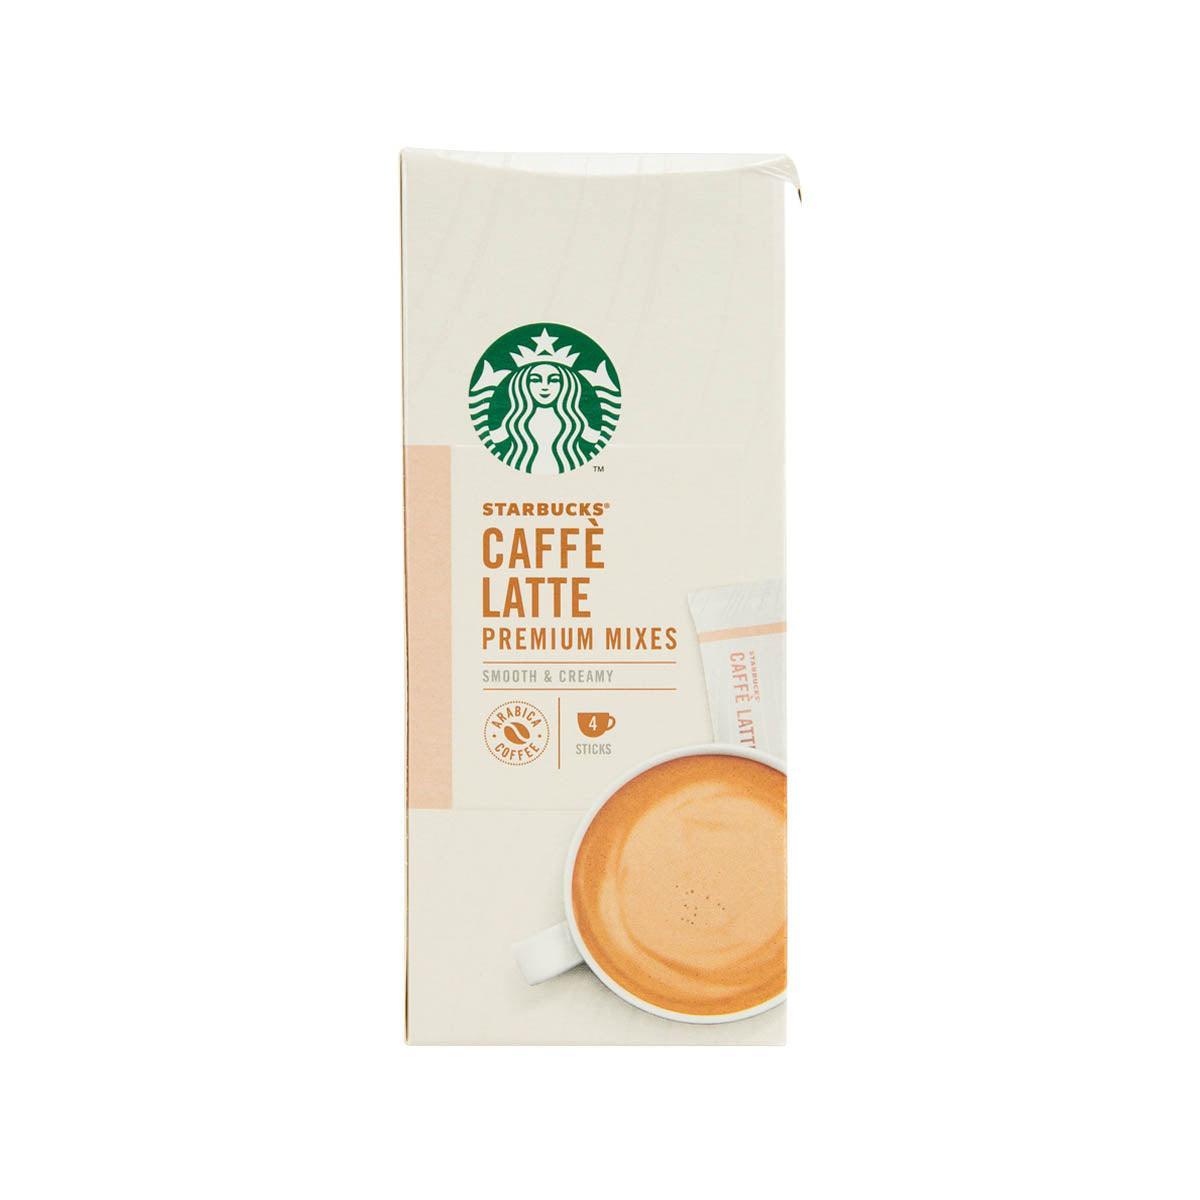 Nestle Japan Starbucks Caffe Latte By Nescafe Dolce Gusto 12 Sticks 